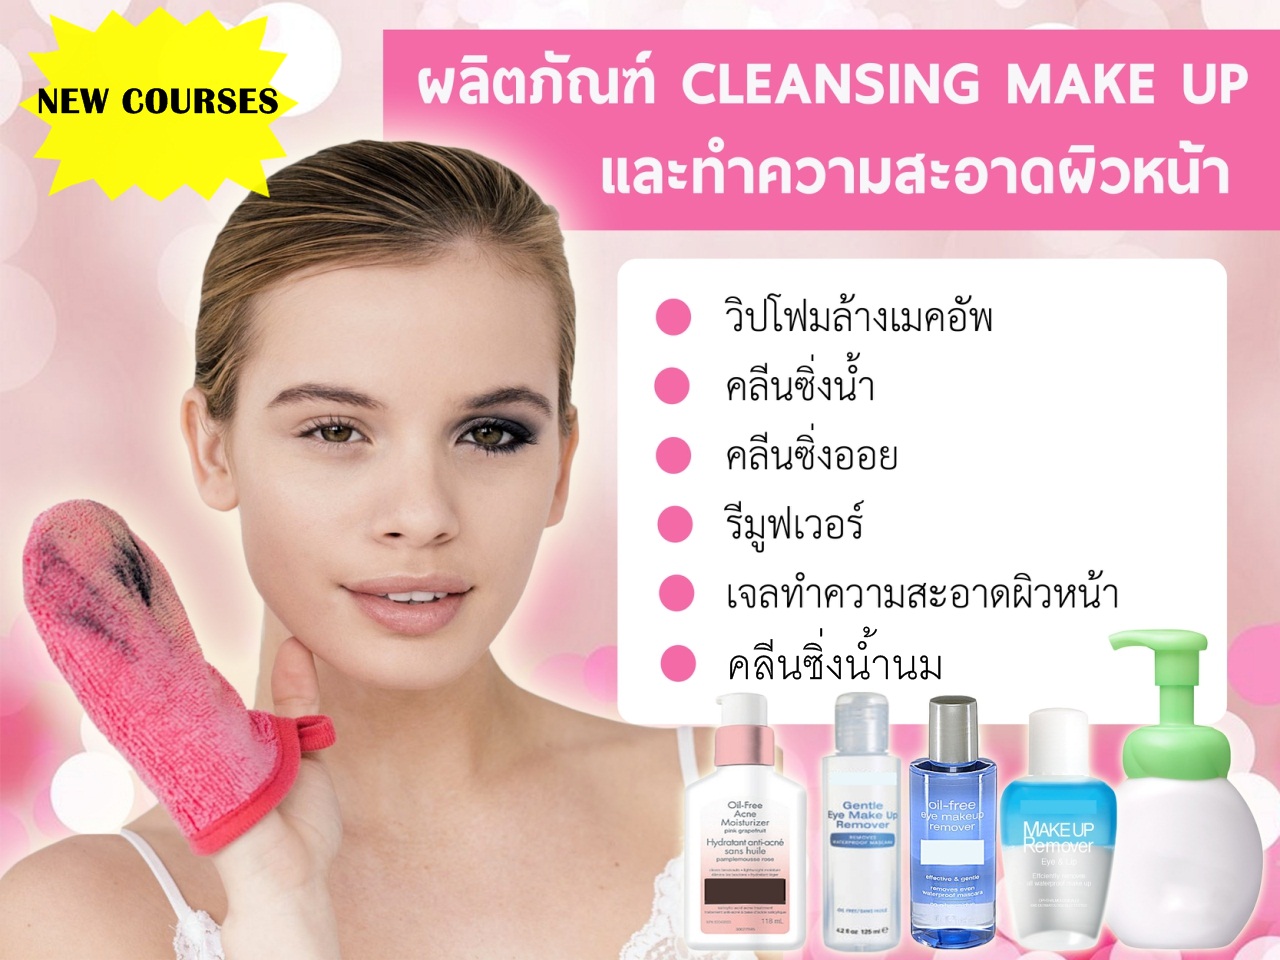 เรียนทำผลิตภัณฑ์ Cleansing Make up และทำความสะอาดผิวหน้า